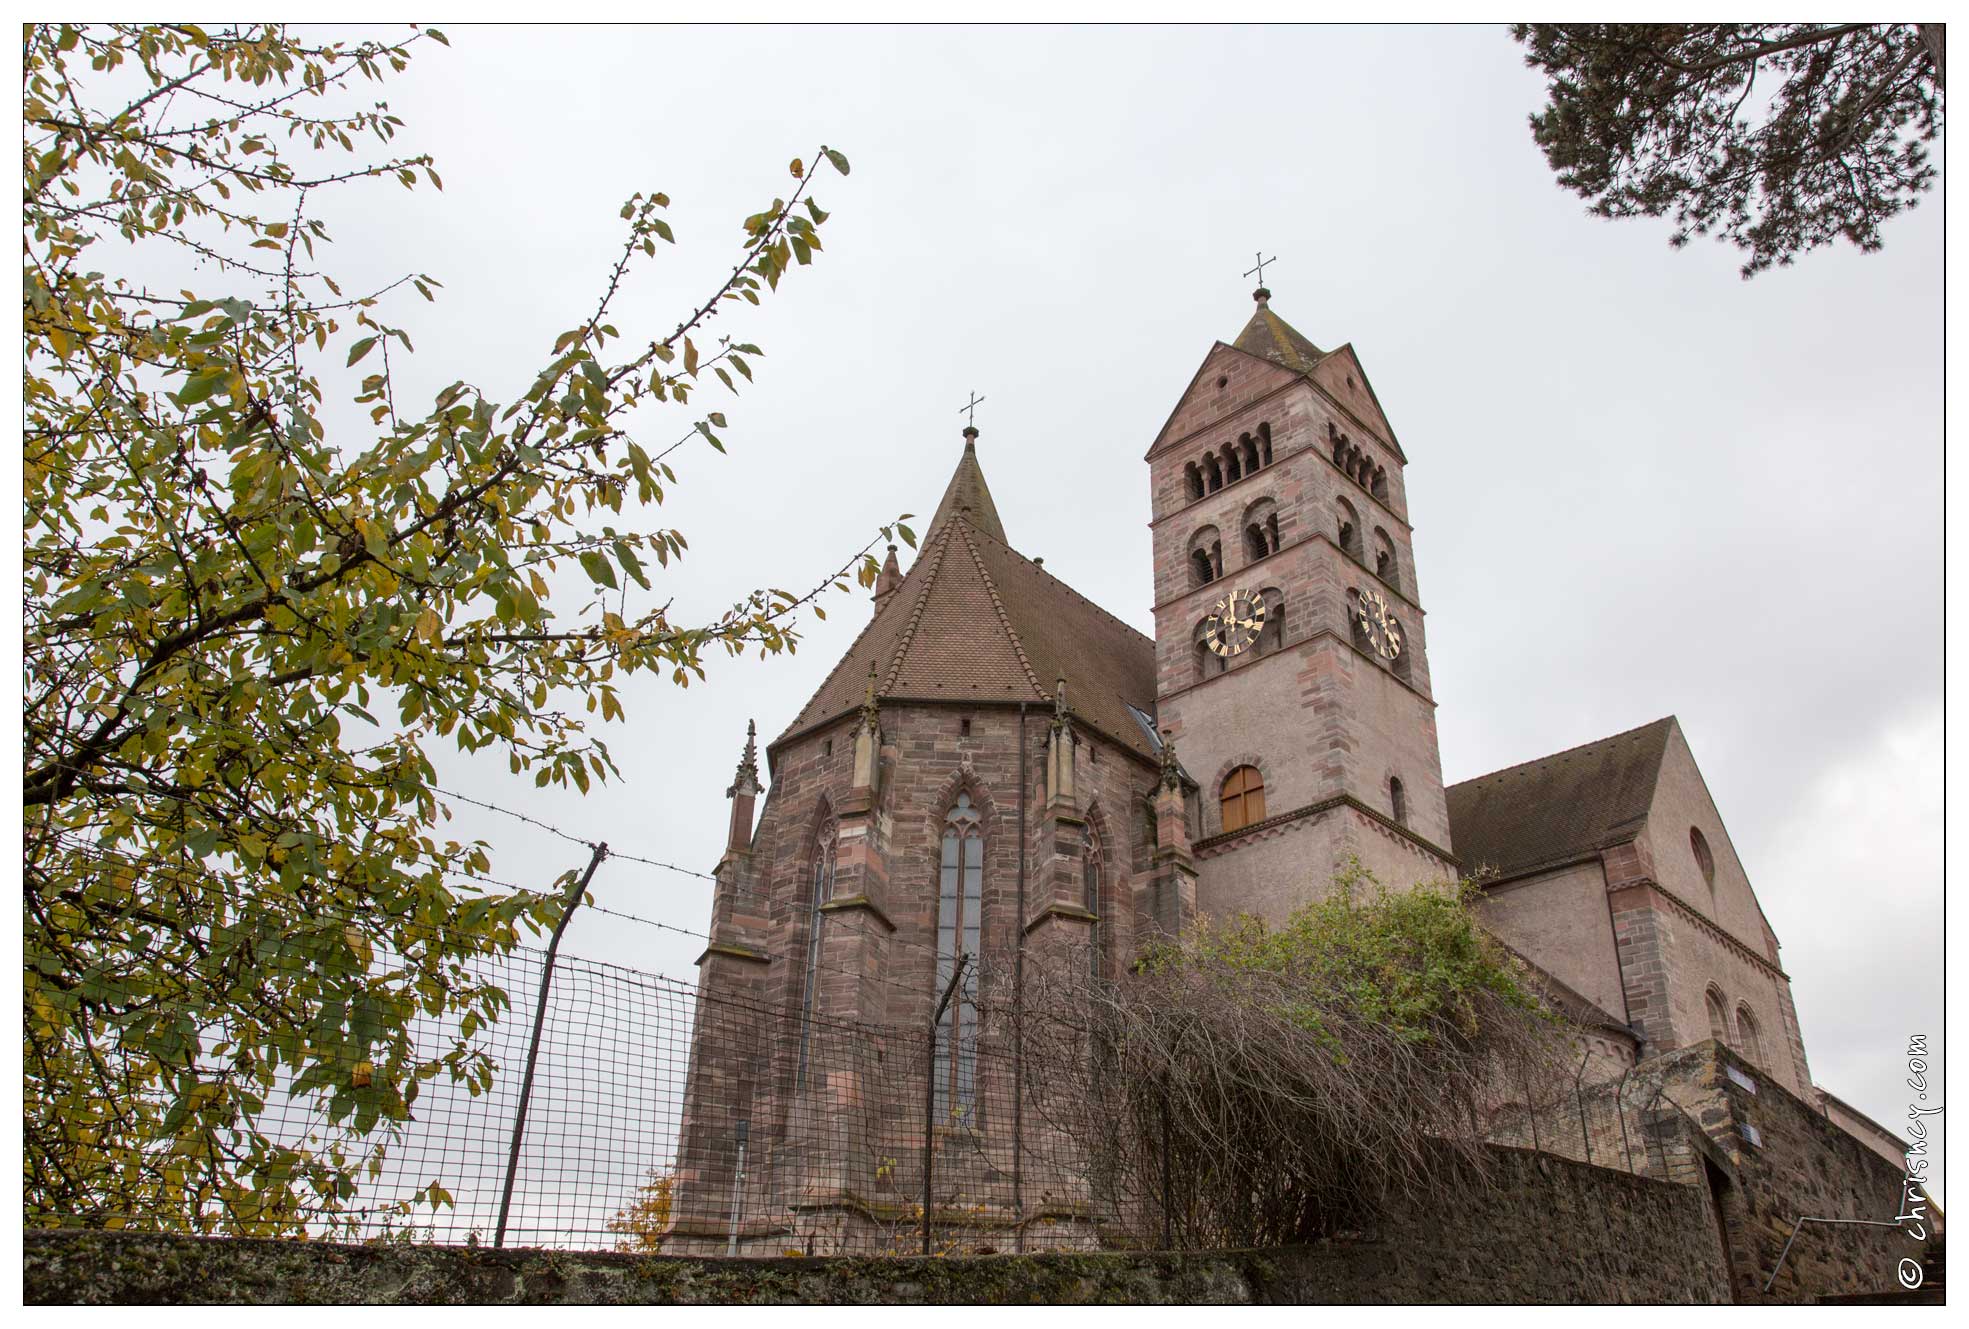 20161106-144_5575-Breisach_am_Rhein_Cathedrale_Saint_Etienne.jpg